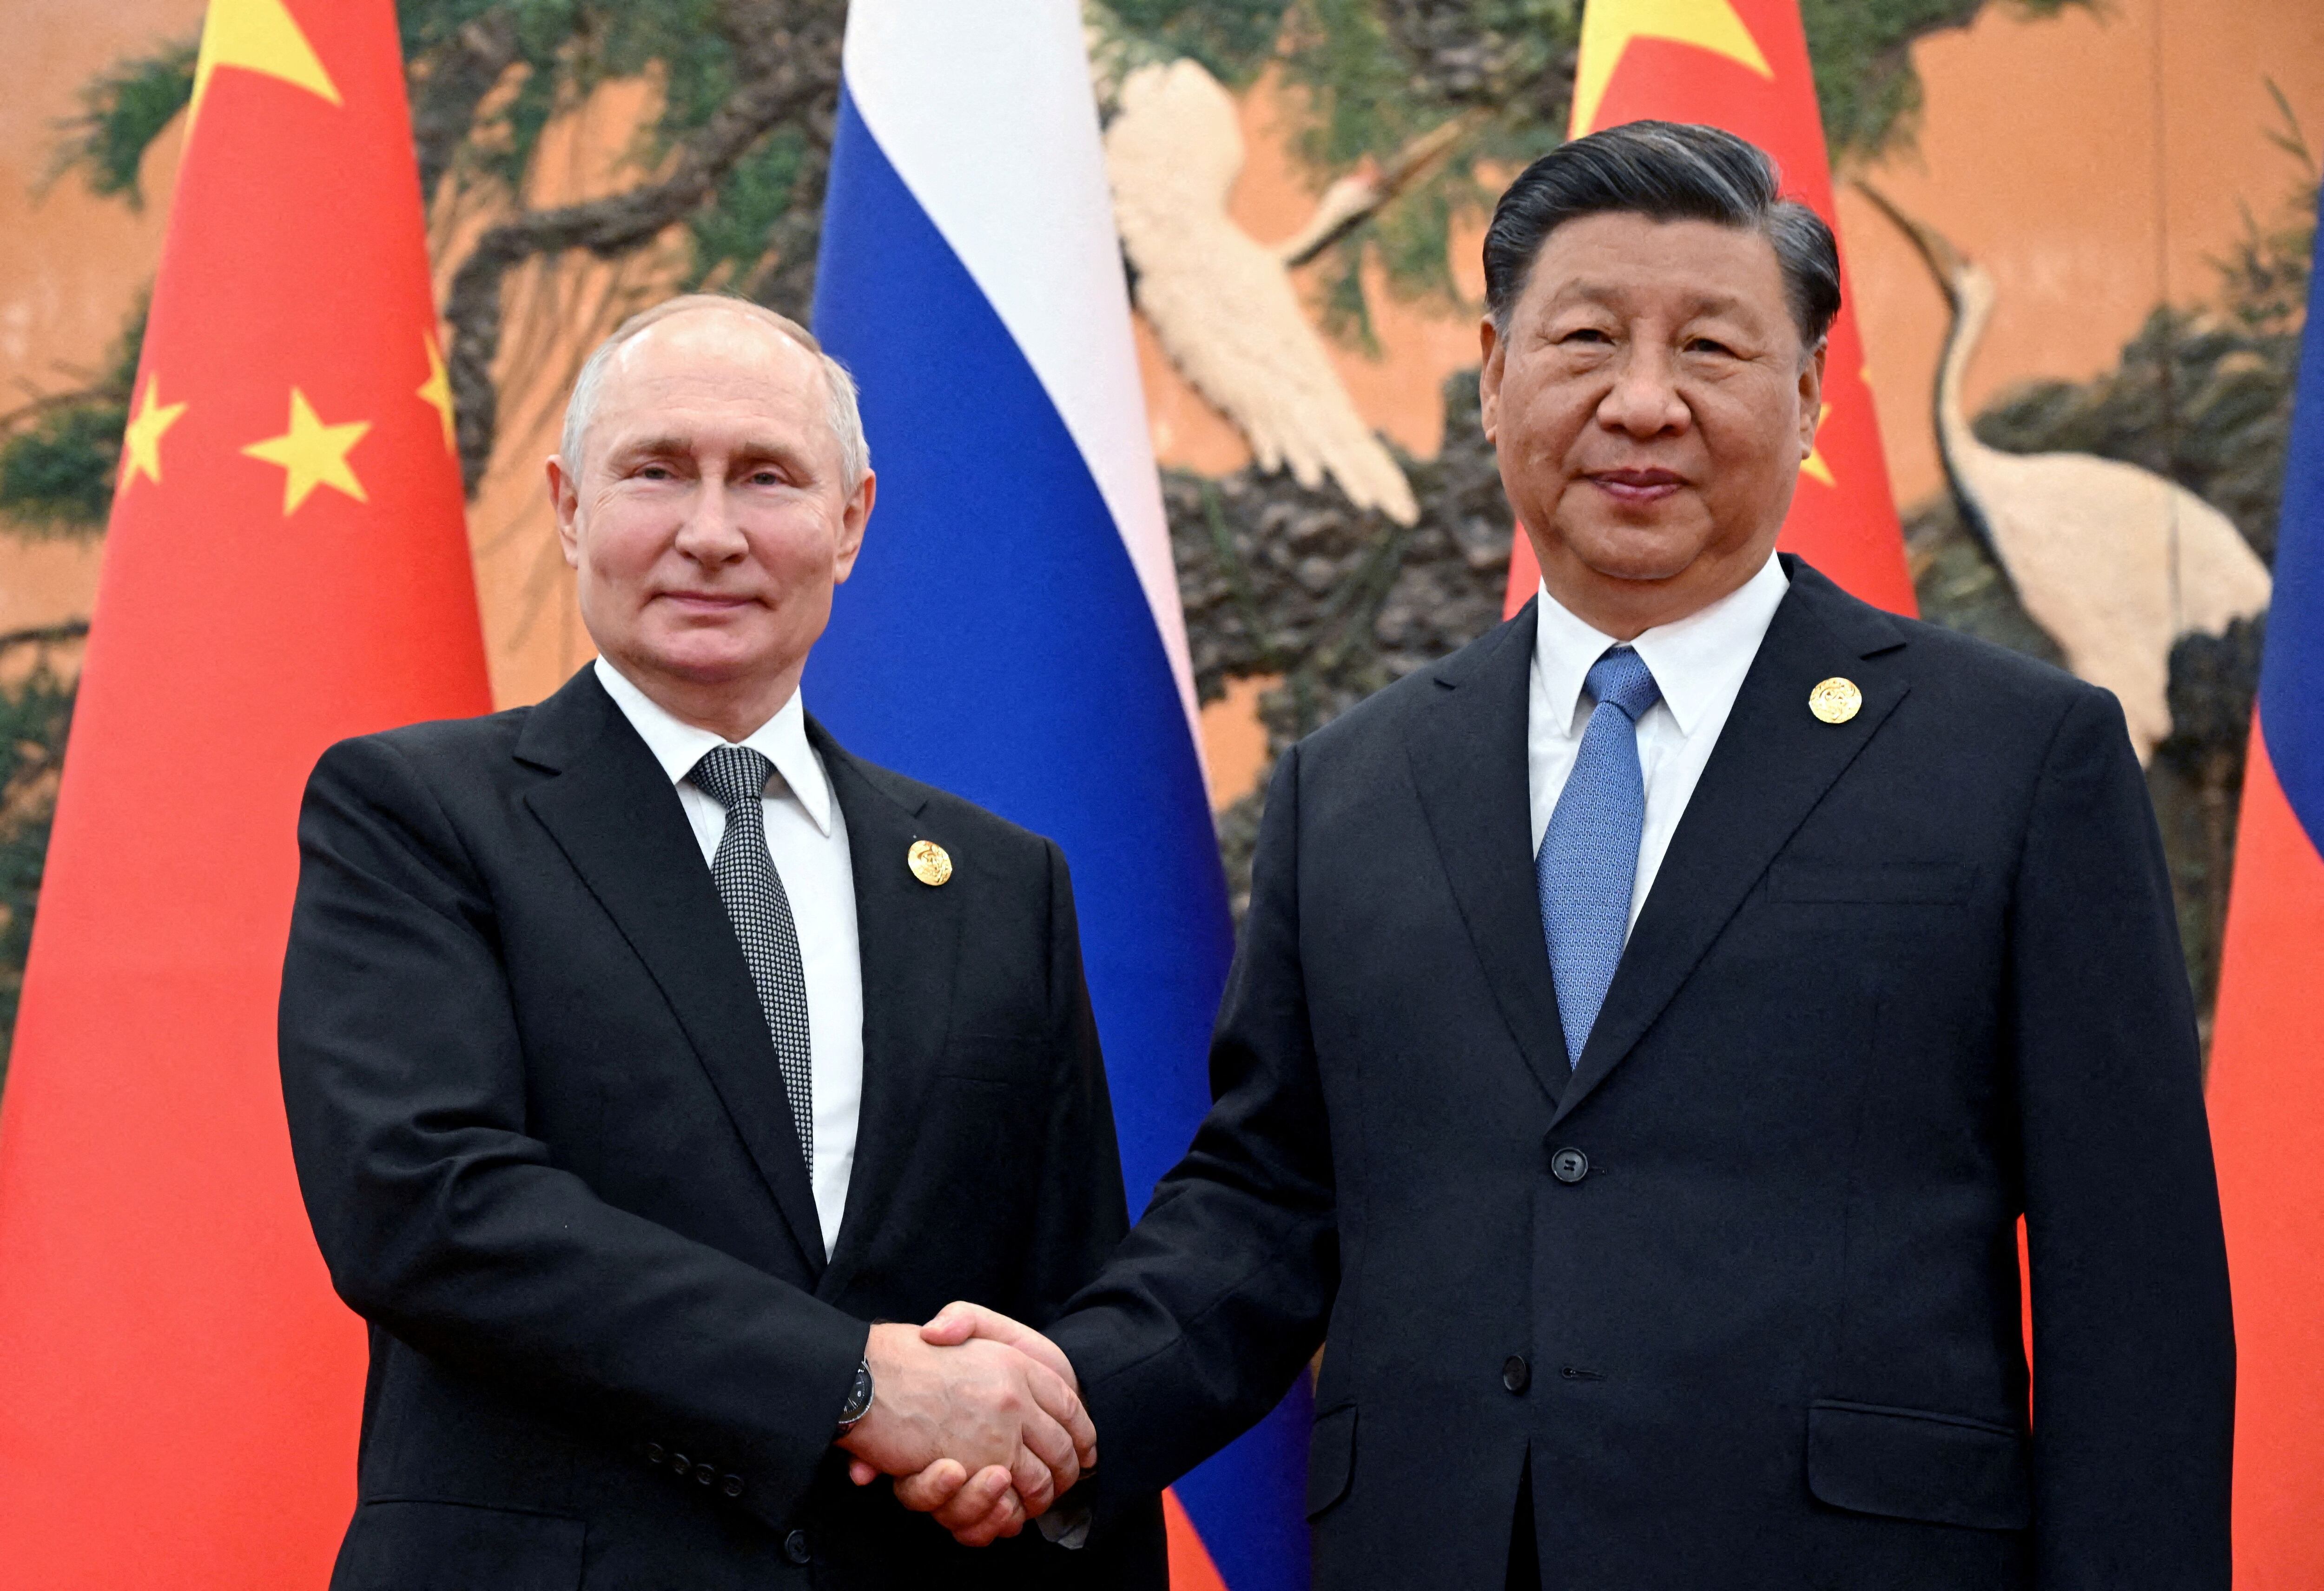 En medio de la invasión a Ucrania, los regímenes de China y Rusia fortalecieron su cooperación en los últimos años (Sputnik/Sergei Guneev/Pool via REUTERS)